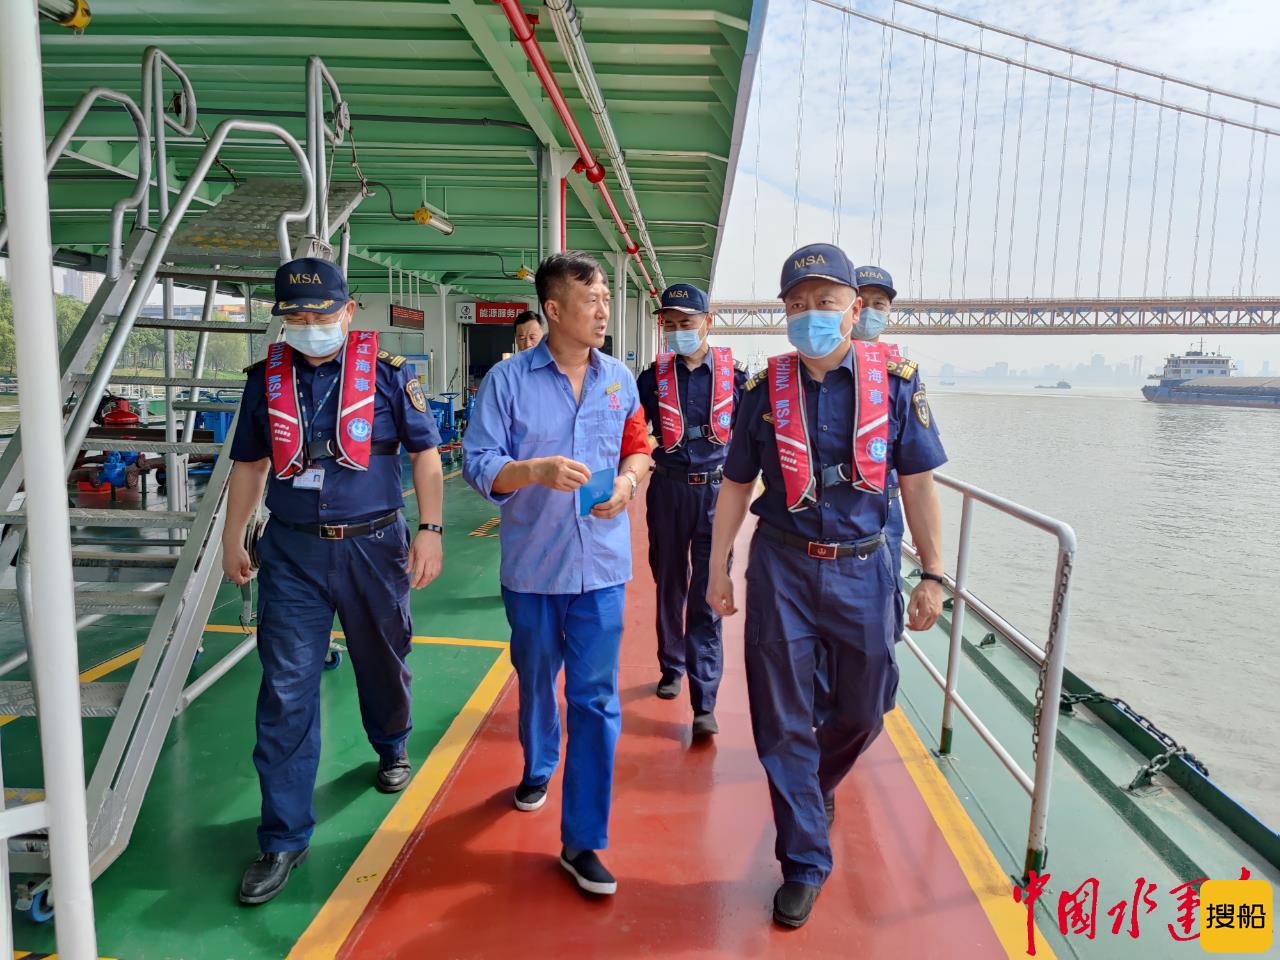 安全生产月首日 武汉港区海事处开展“微调查”“微服务”活动